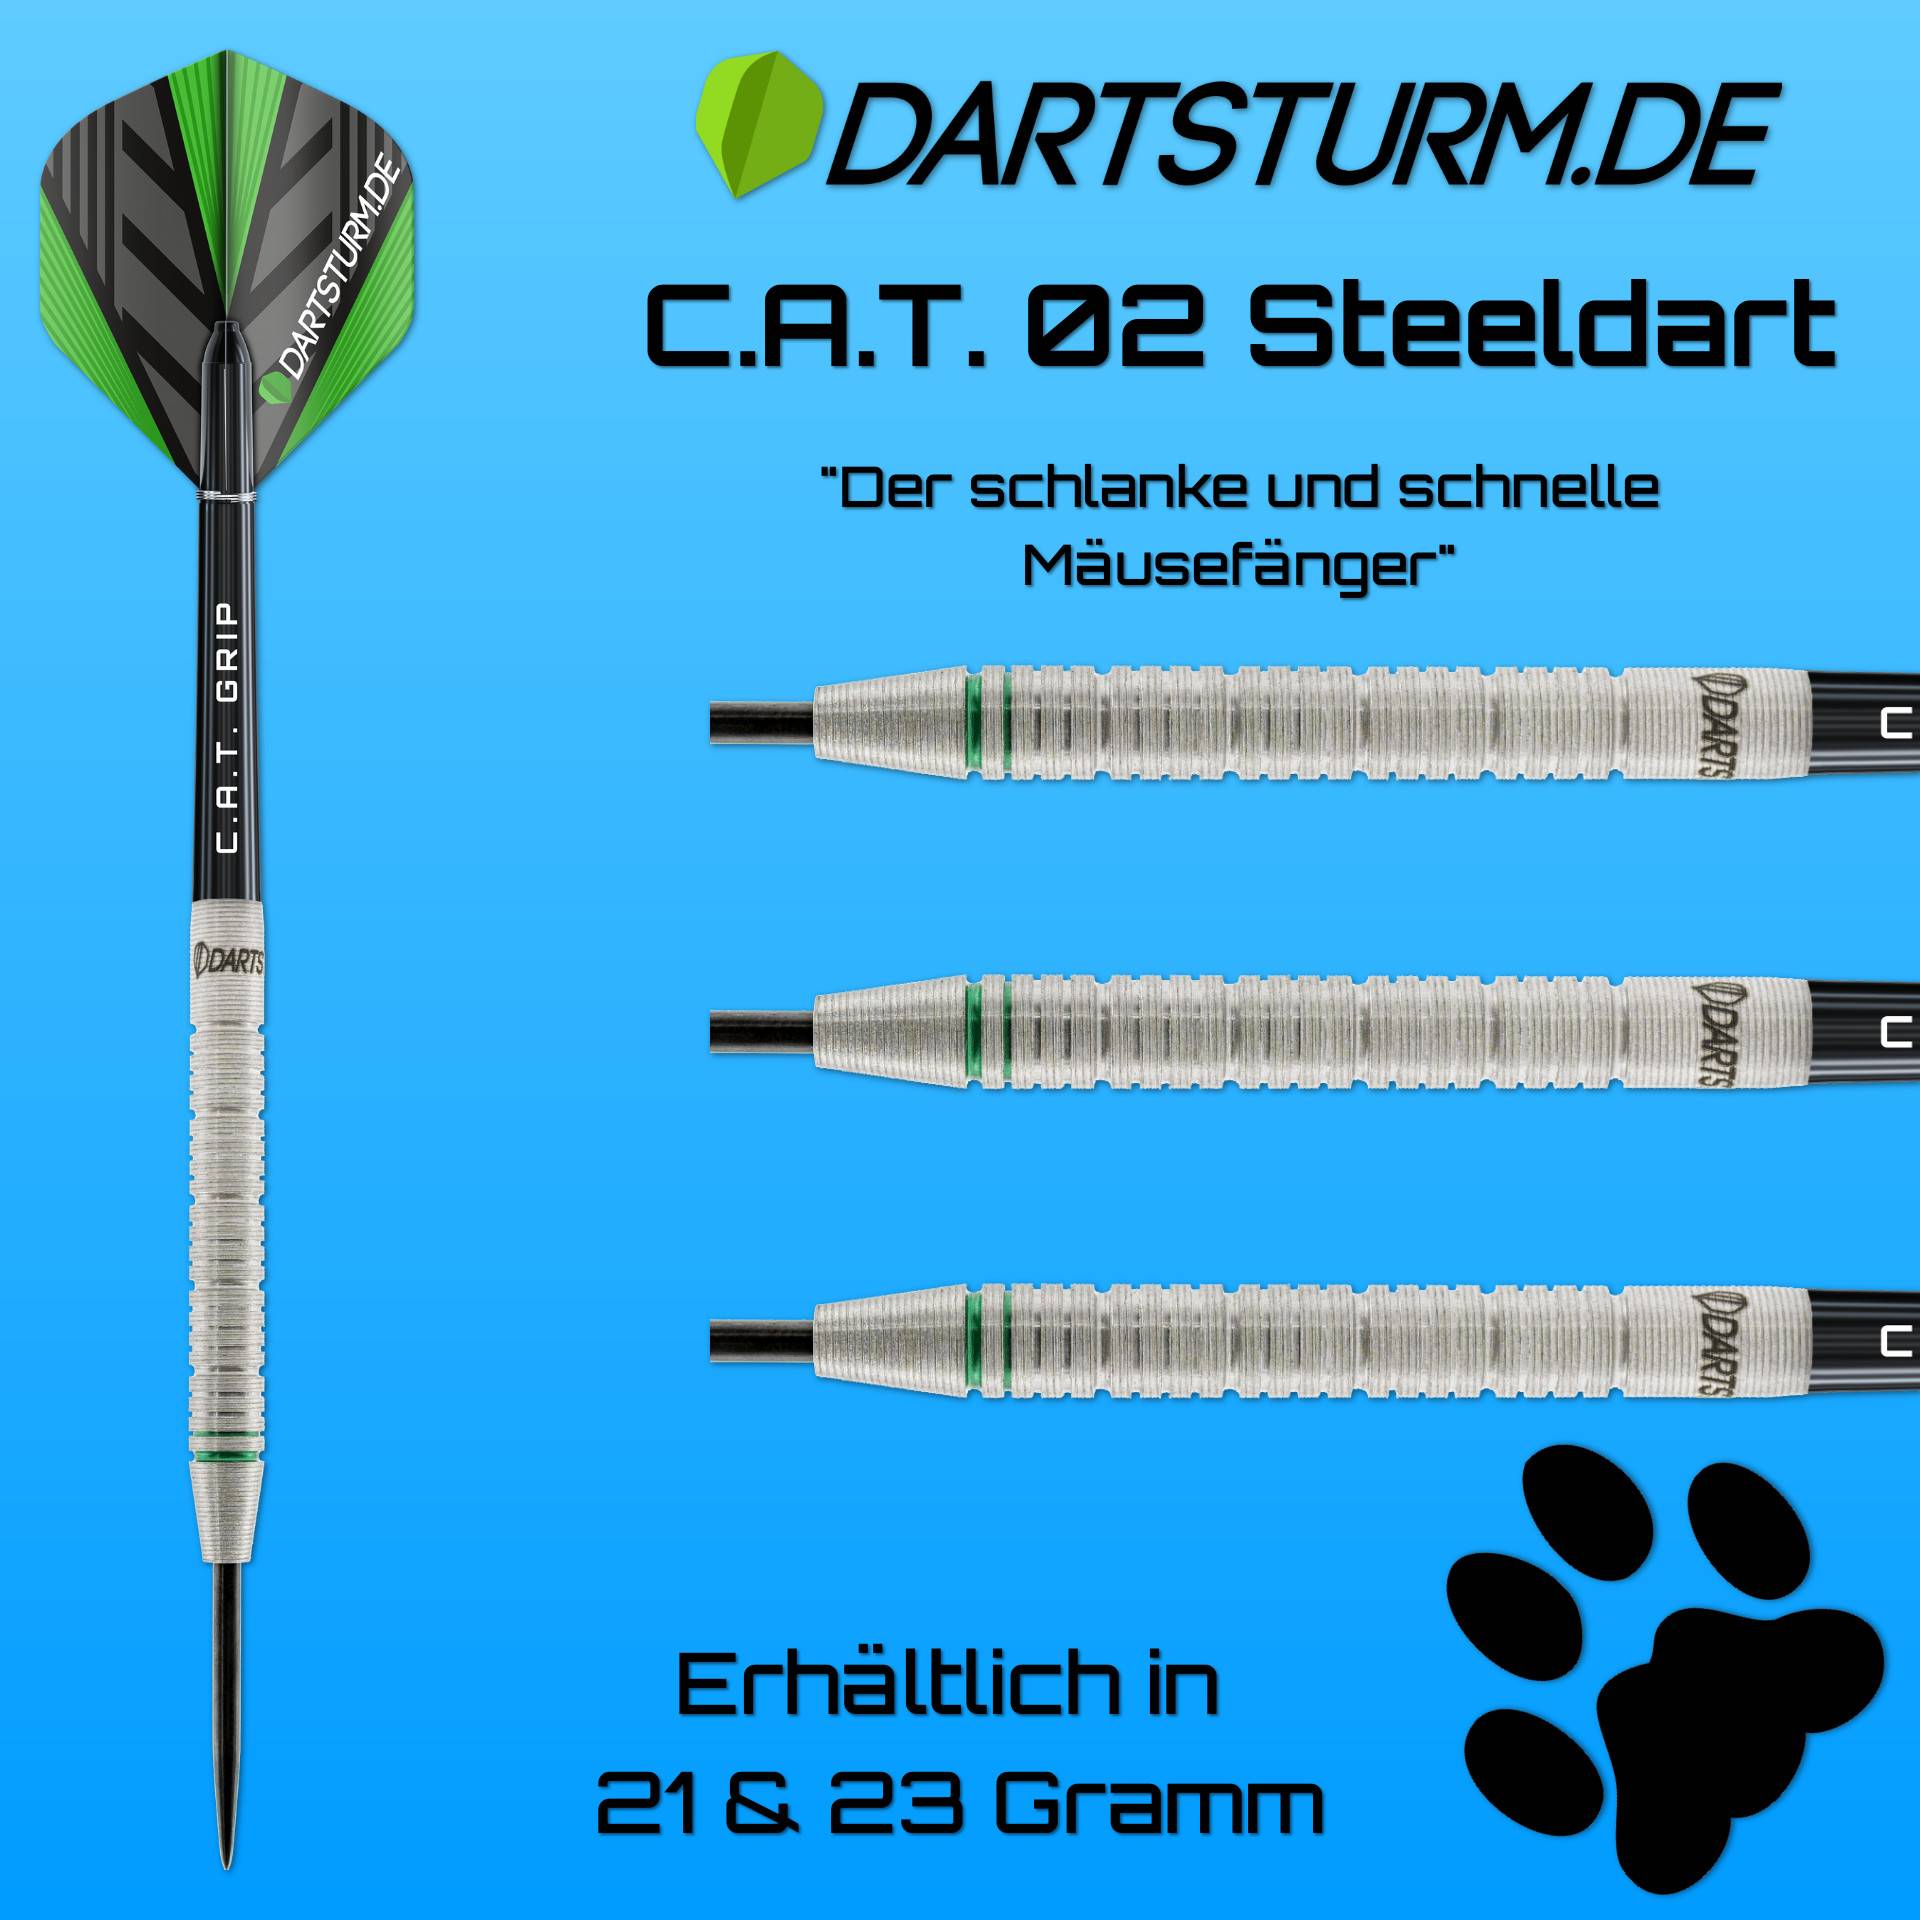 B-Ware | DartSturm.de - CAT02 - Steeldart